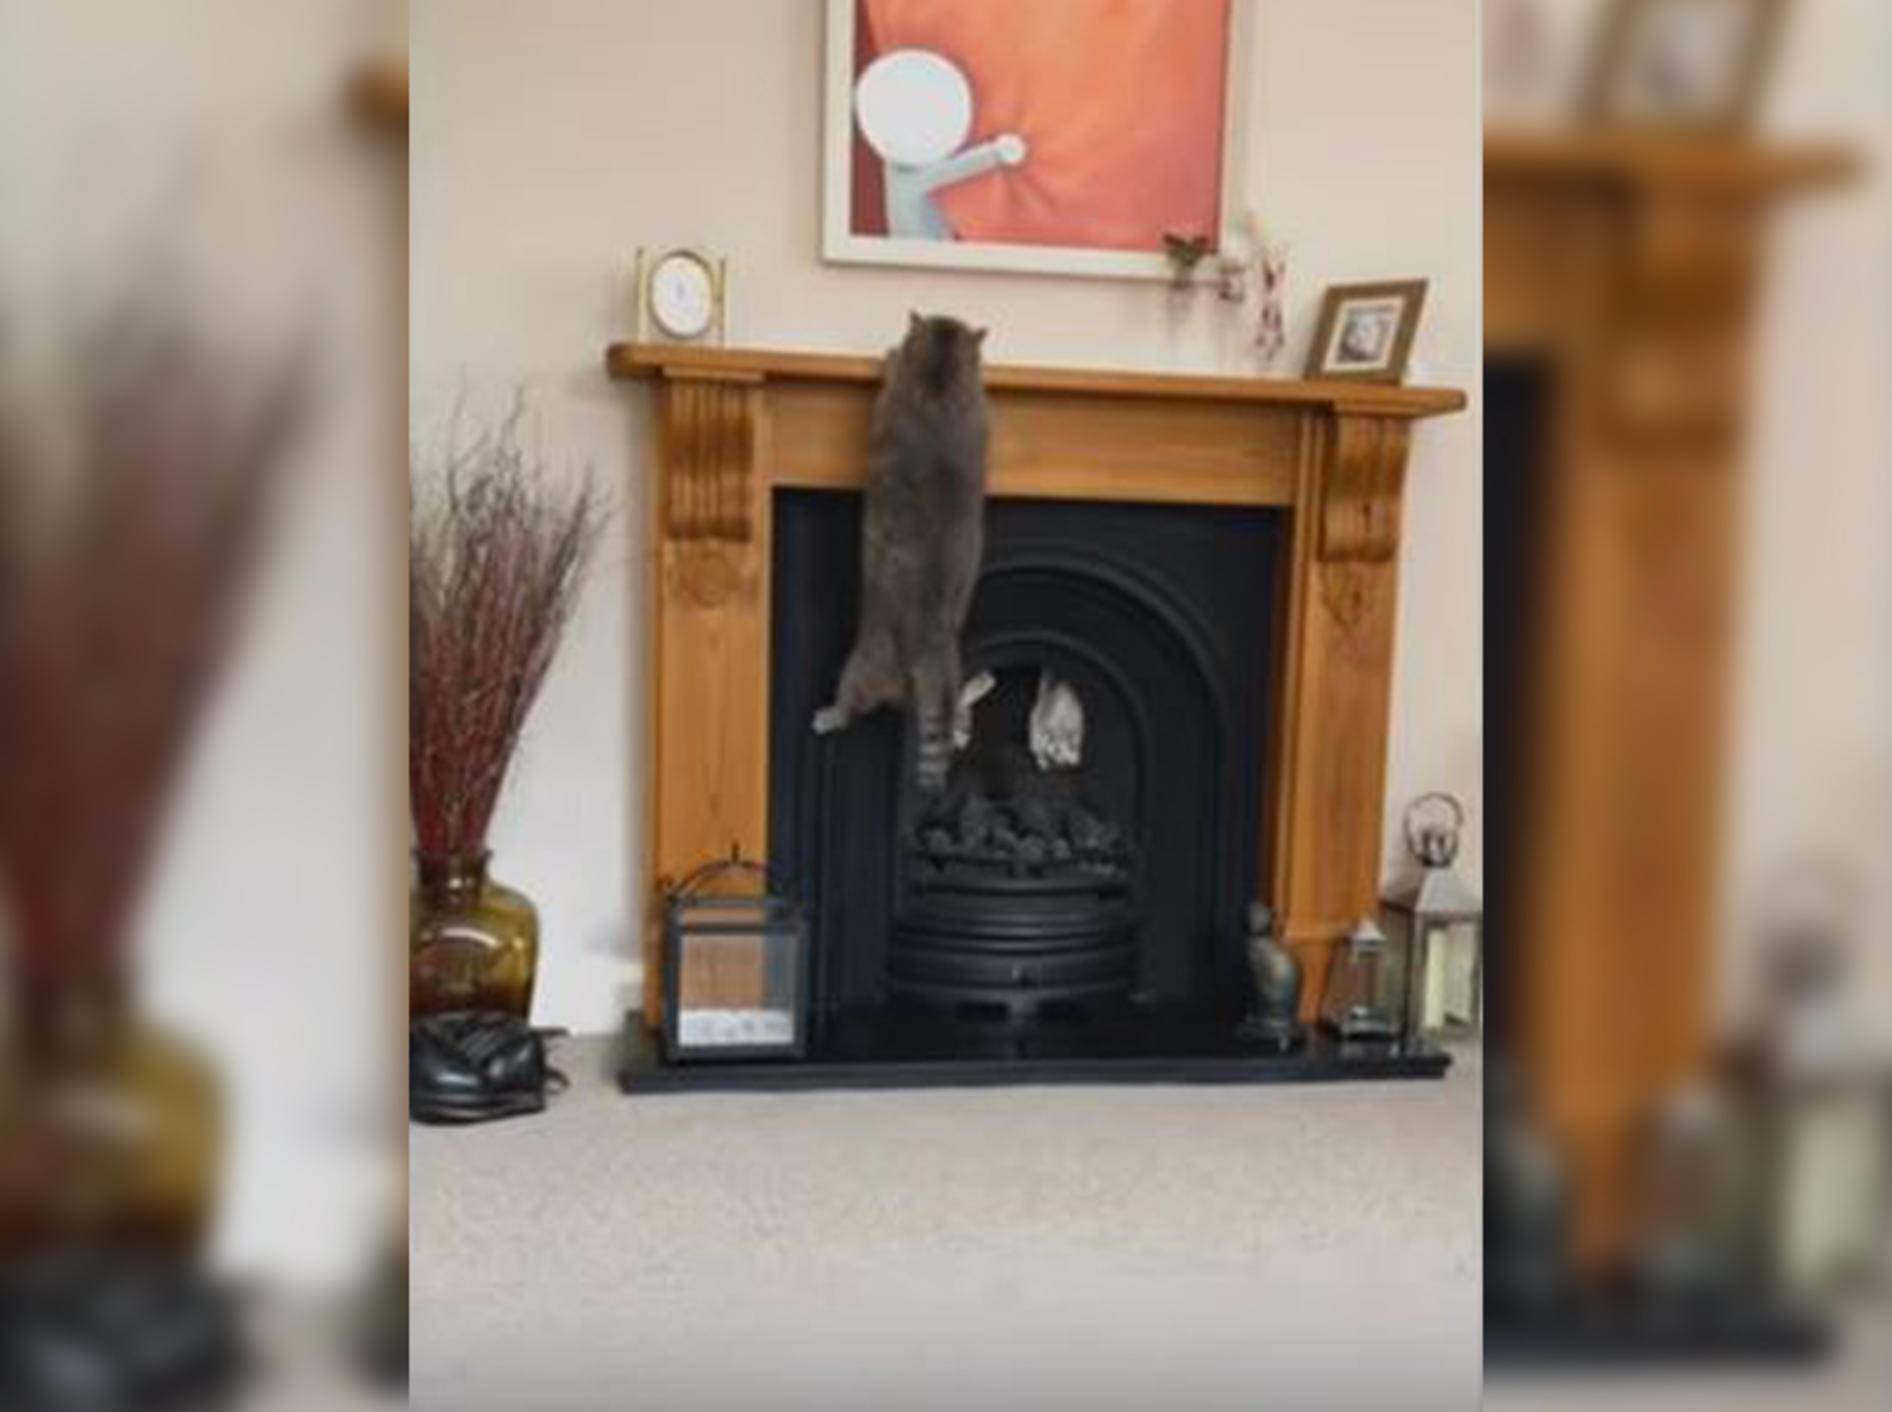 Diese Katze versucht vergeblich, auf den Kaminsims zu klettern - Bild: YouTube / DailyPicksandFlicks